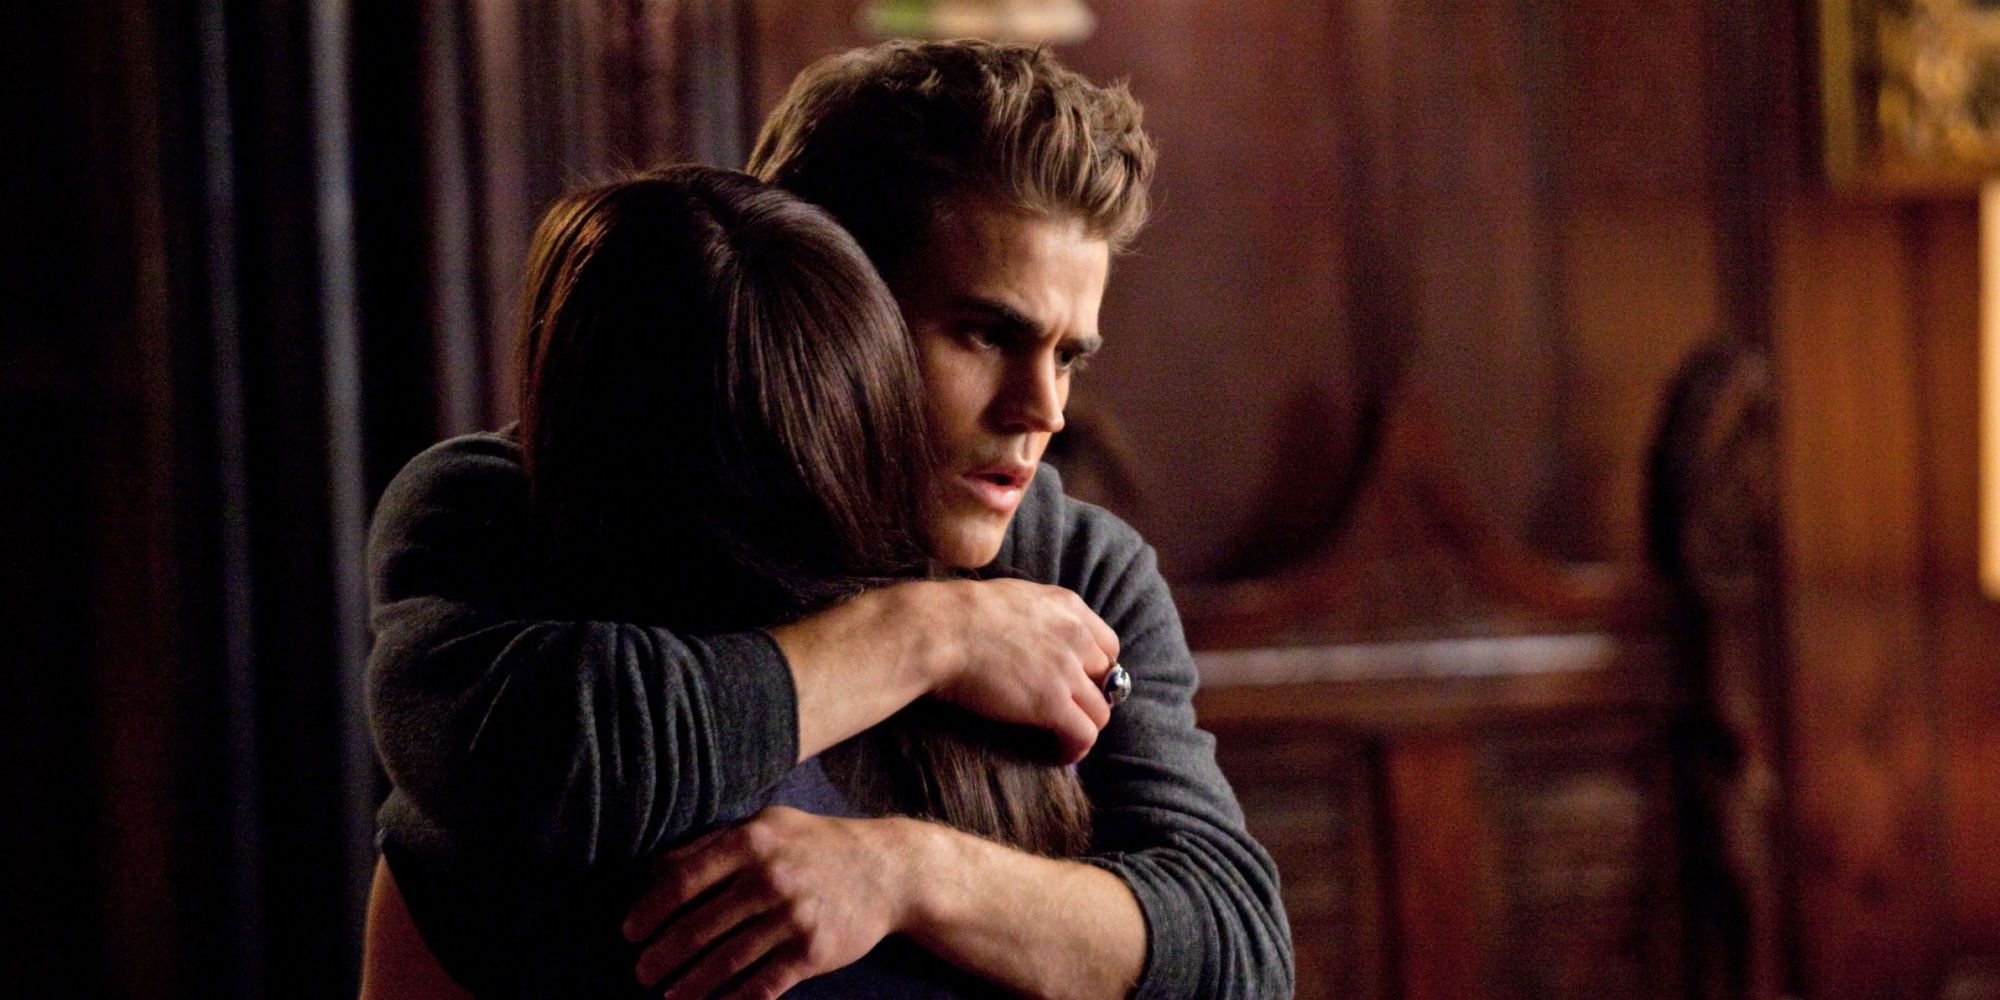 Stefan hugging Elena in The Vampire Diaries.